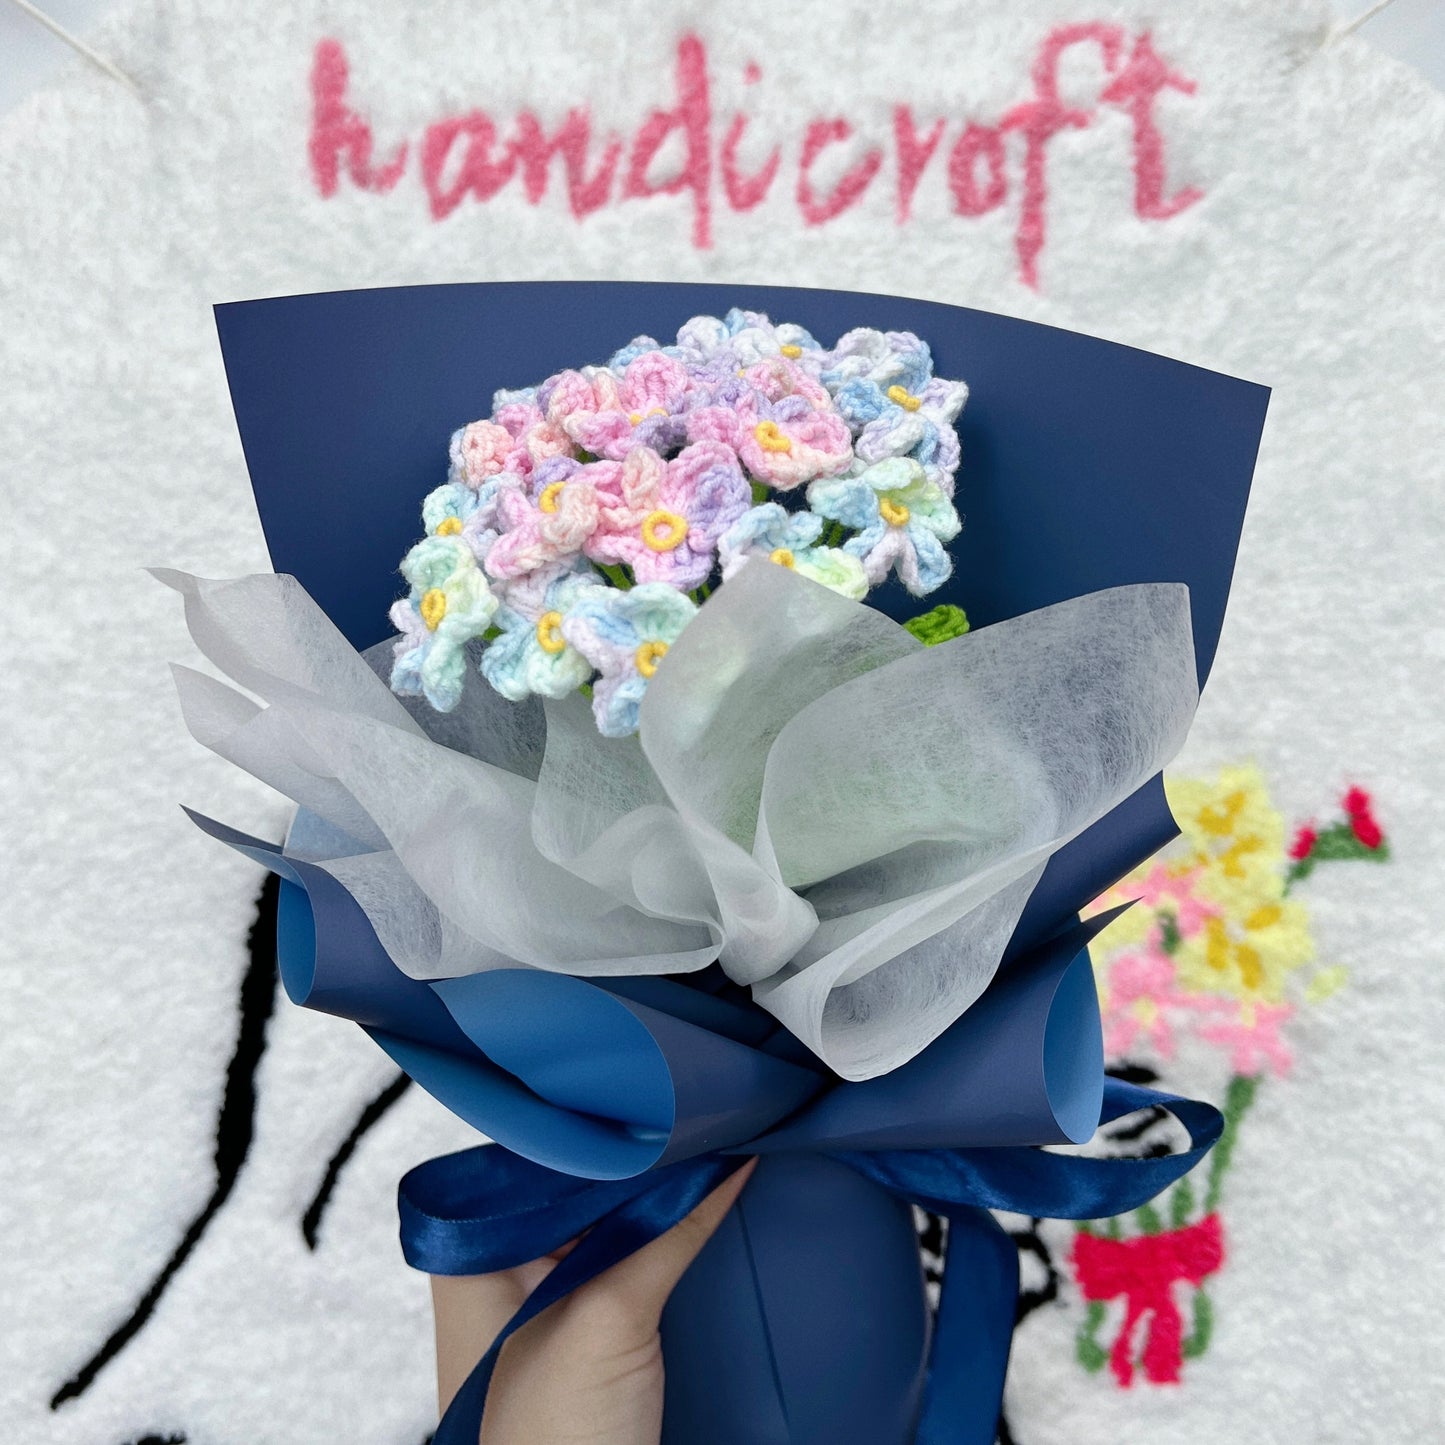 fond memories - forget-me-not crochet flower bouquet 🦋